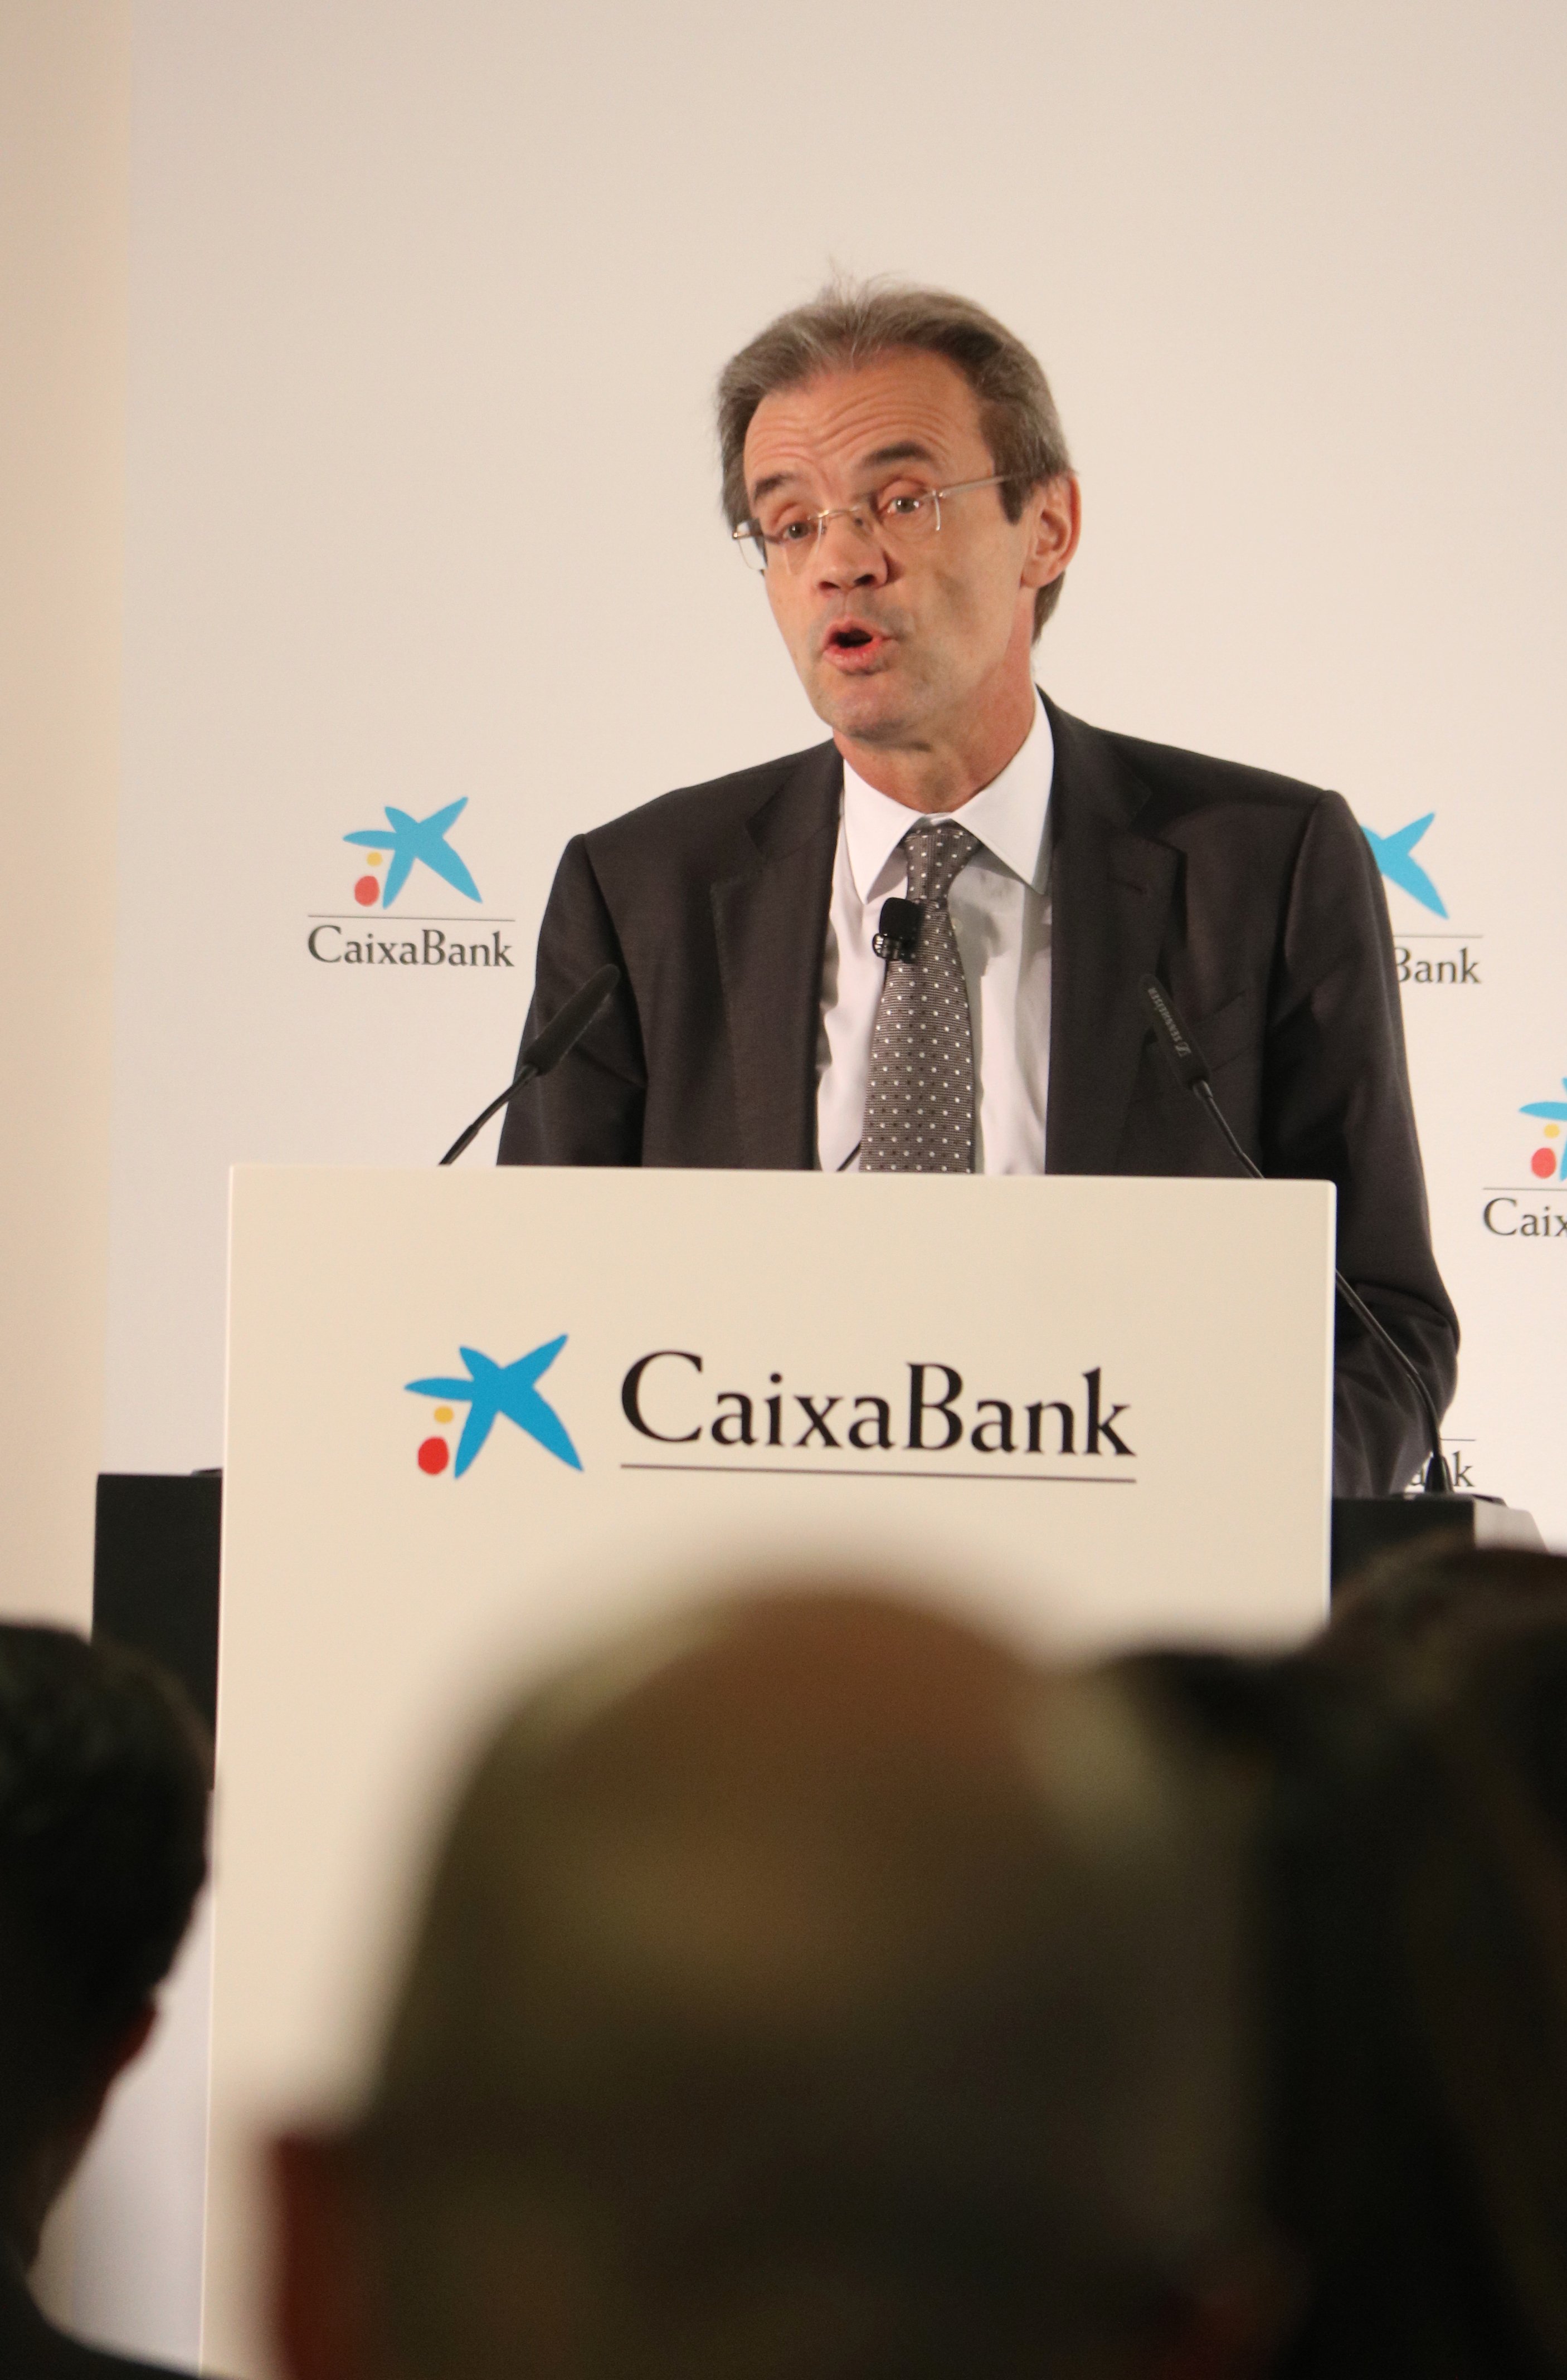 El plan estratégico de CaixaBank prevé una rentabilidad superior al 12% en 2021